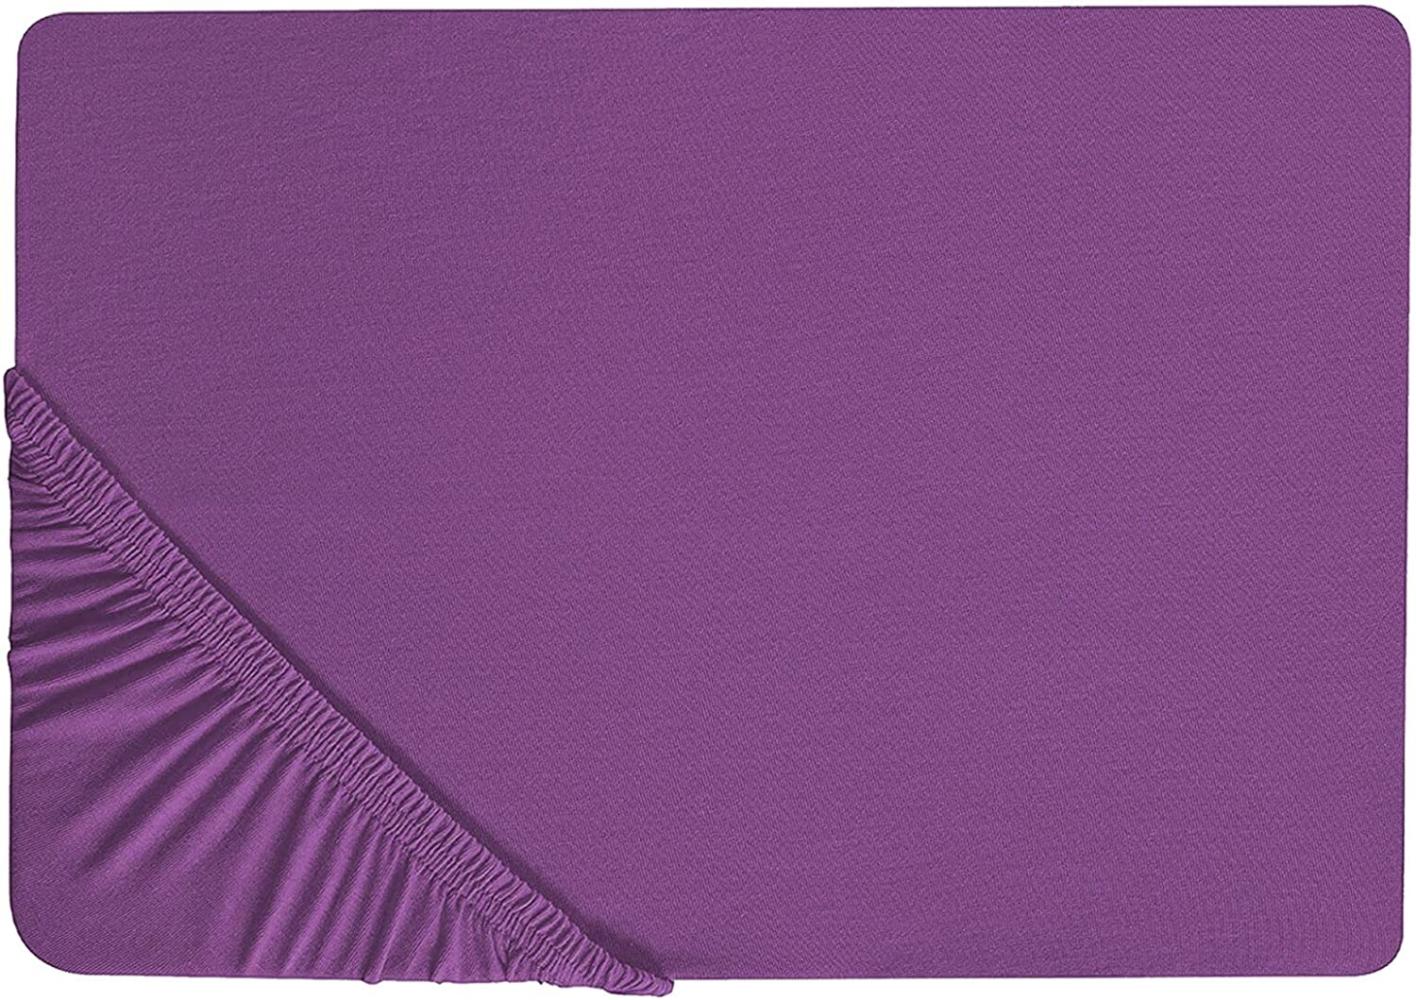 Spannbettlaken Baumwolle purpur 200 x 200 cm JANBU Bild 1